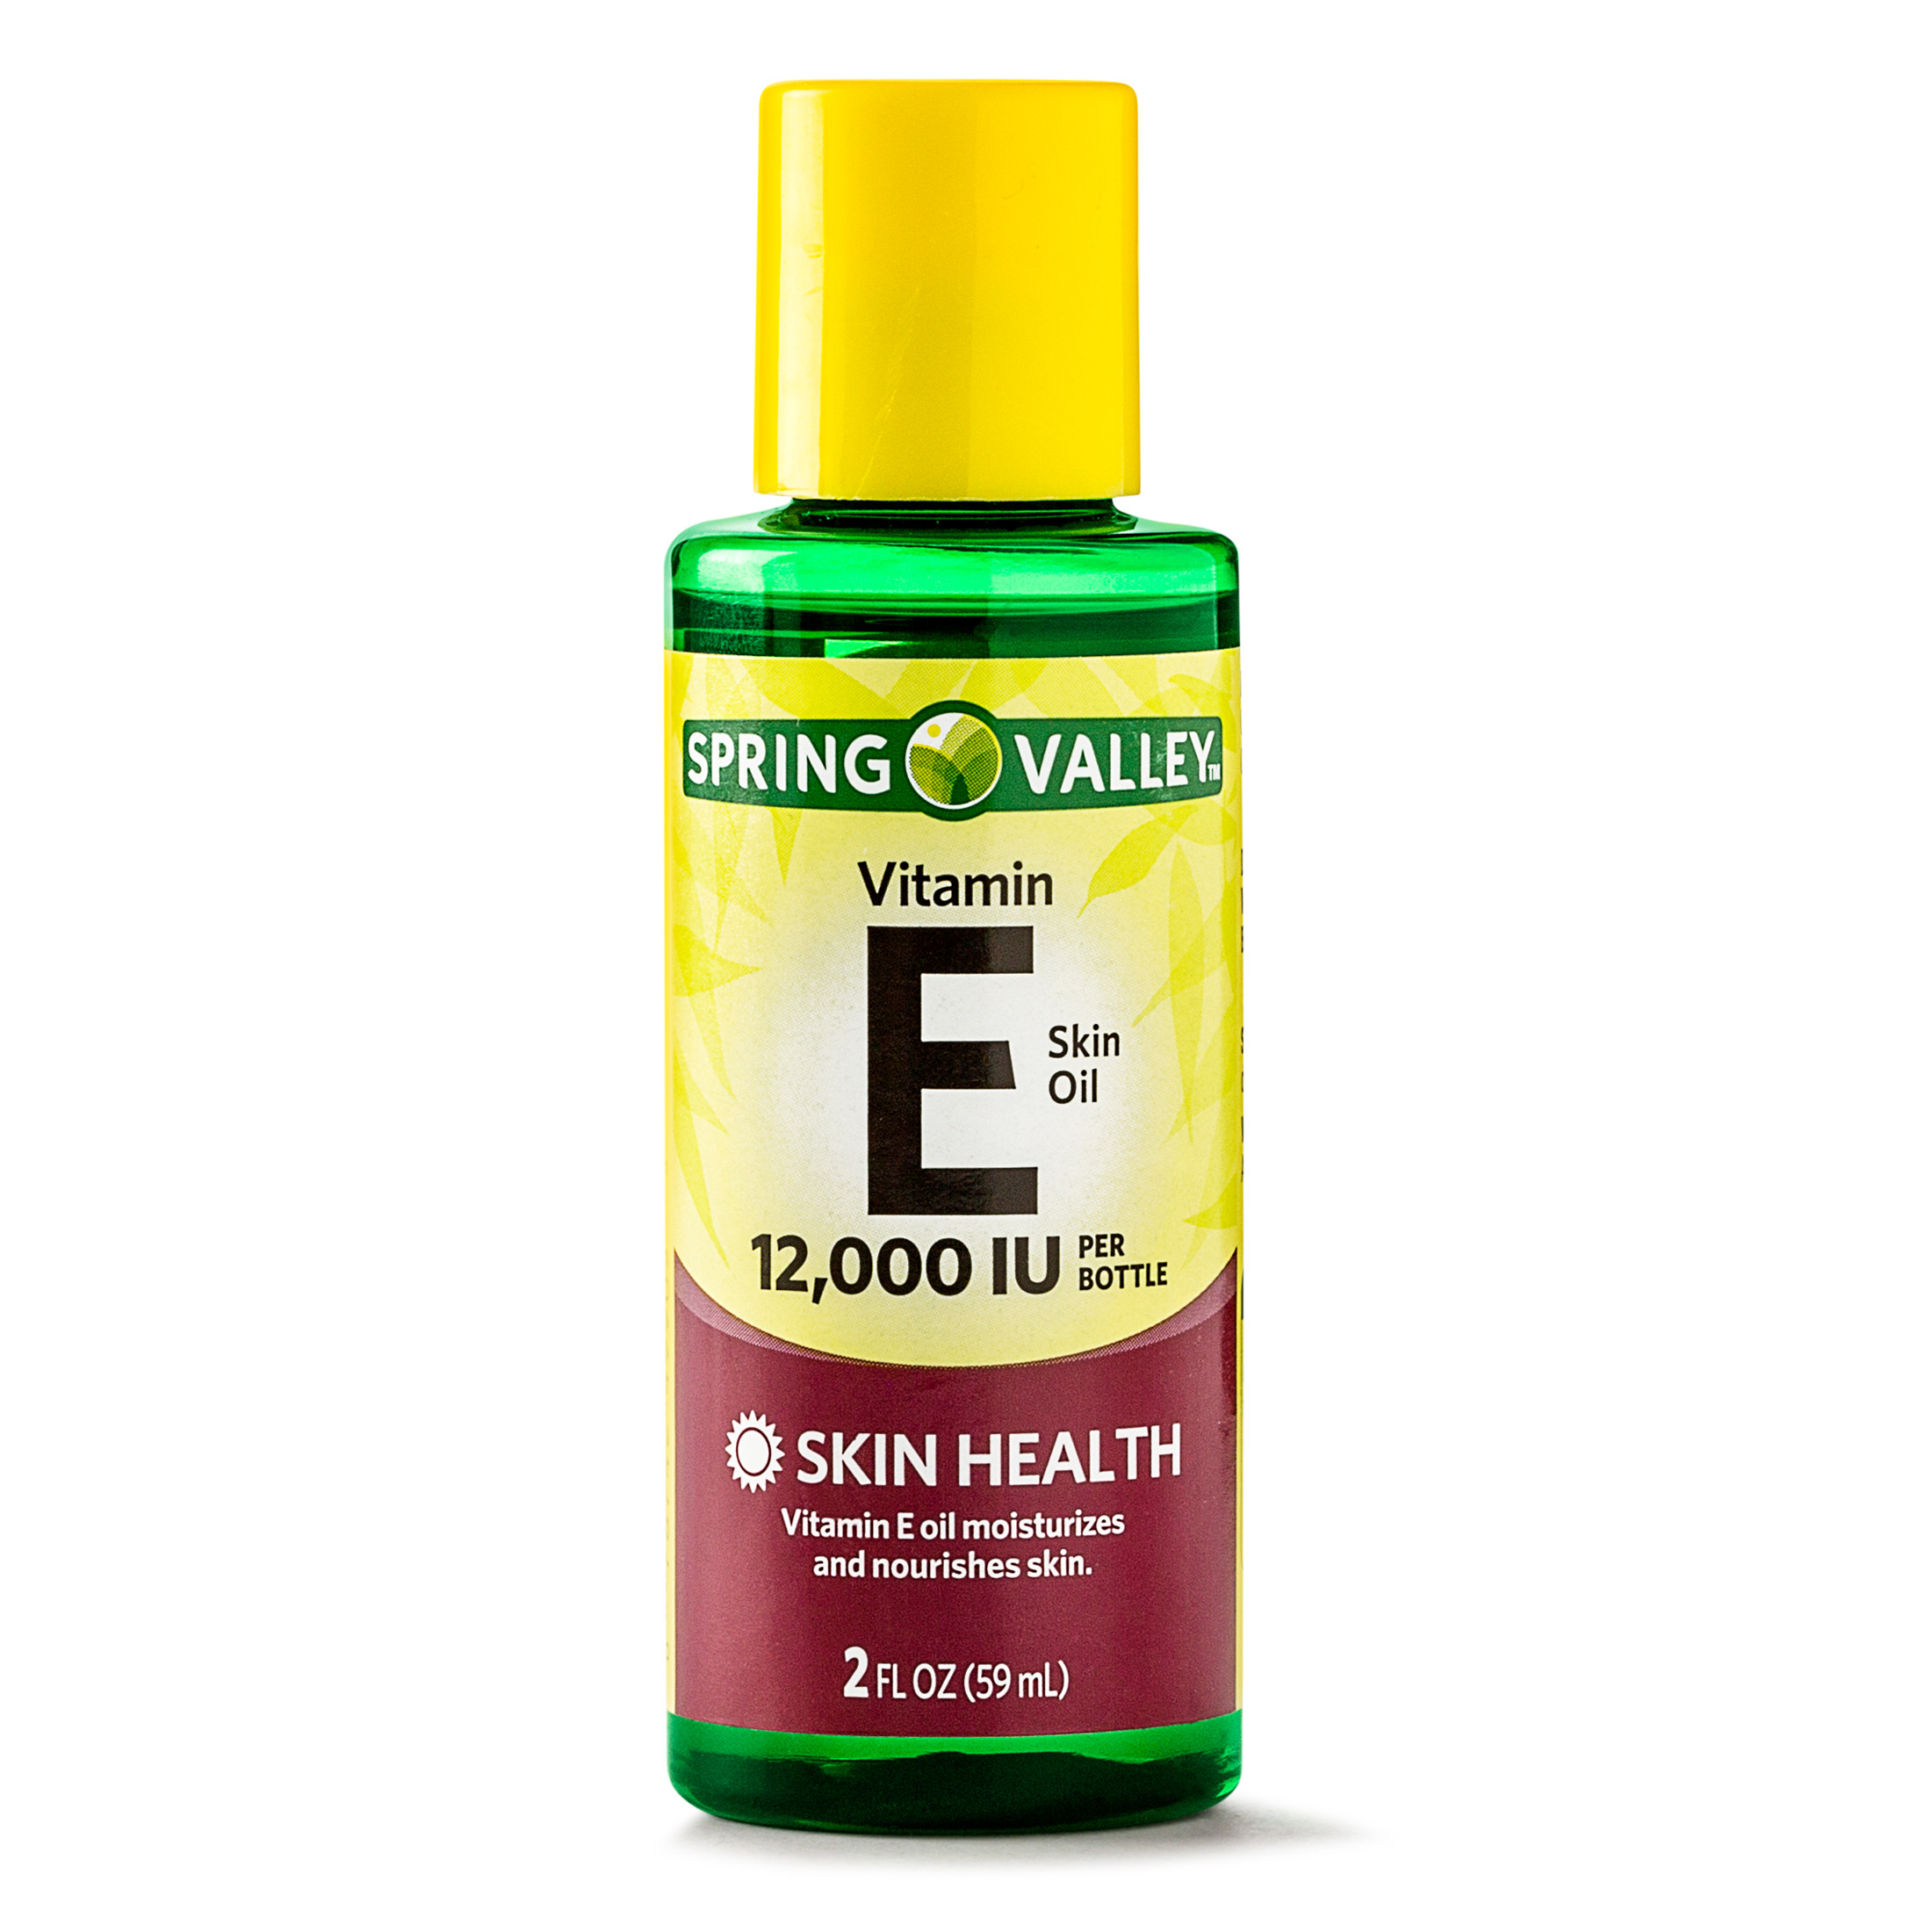 Spring Valley Vitamin E Skin Oil, 12,000 IU, 2 fl oz - image 1 of 5